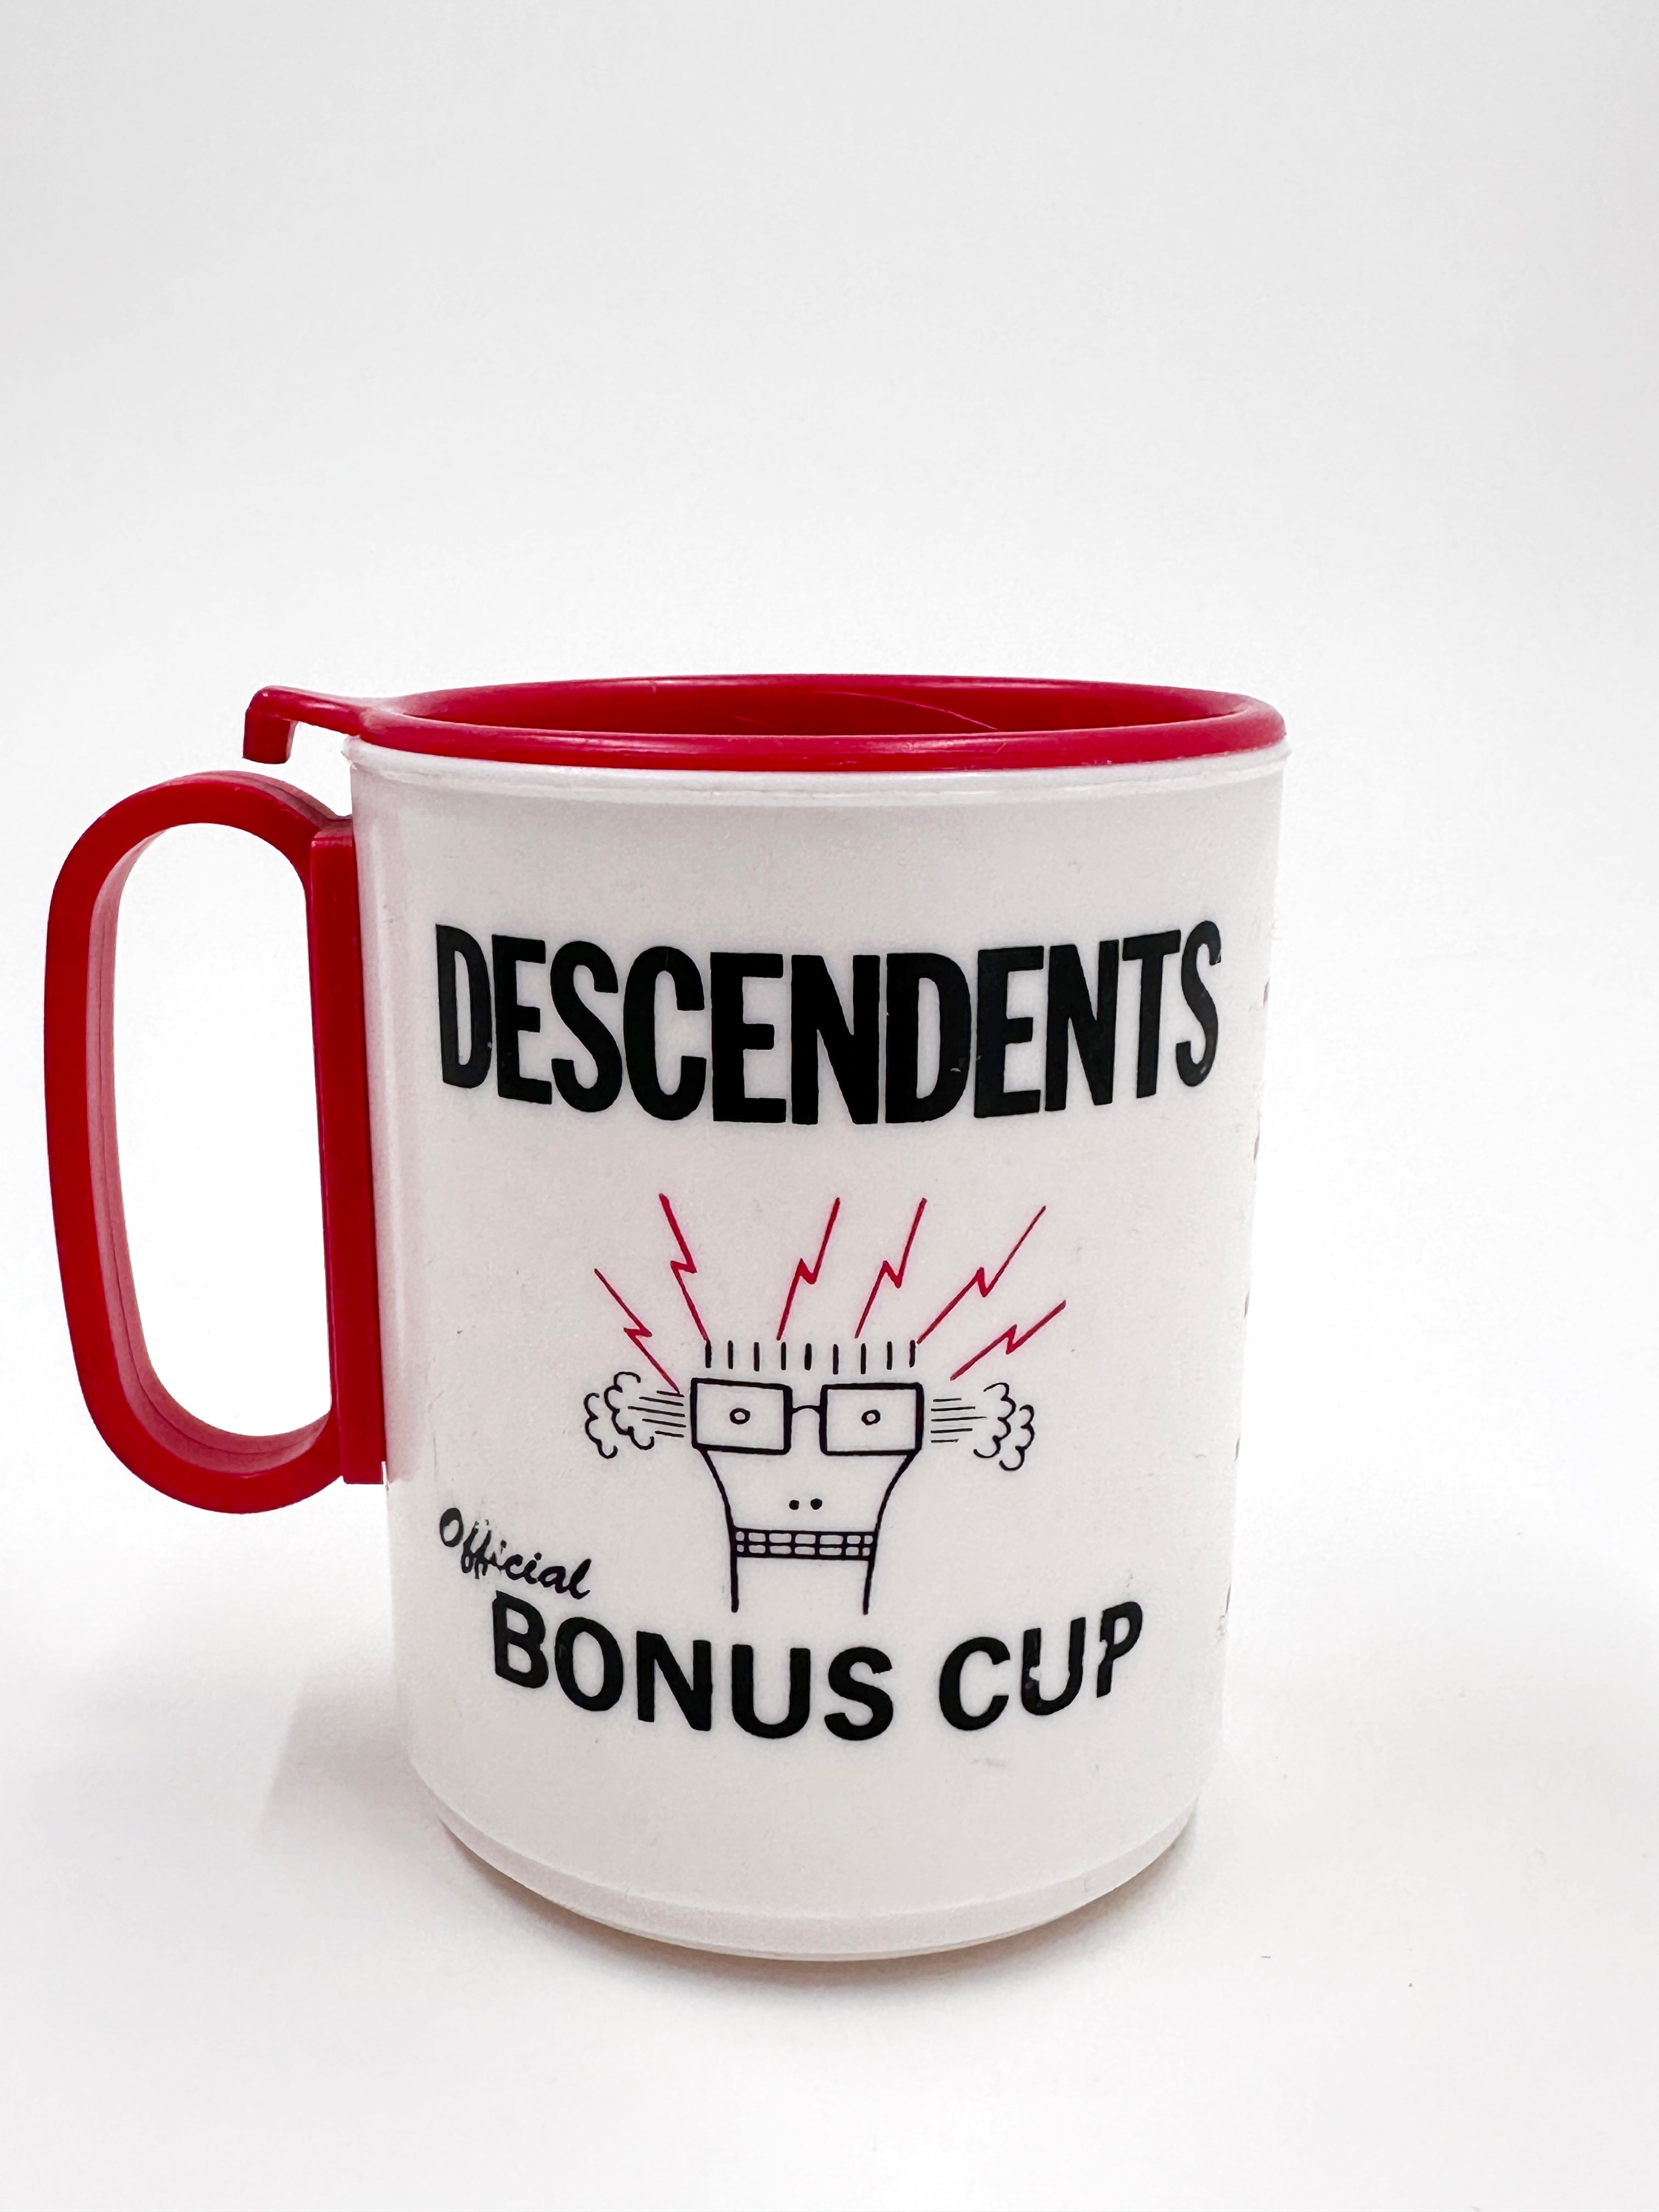 Descendents - Vintage 80's Official Bonus Cup / Mug